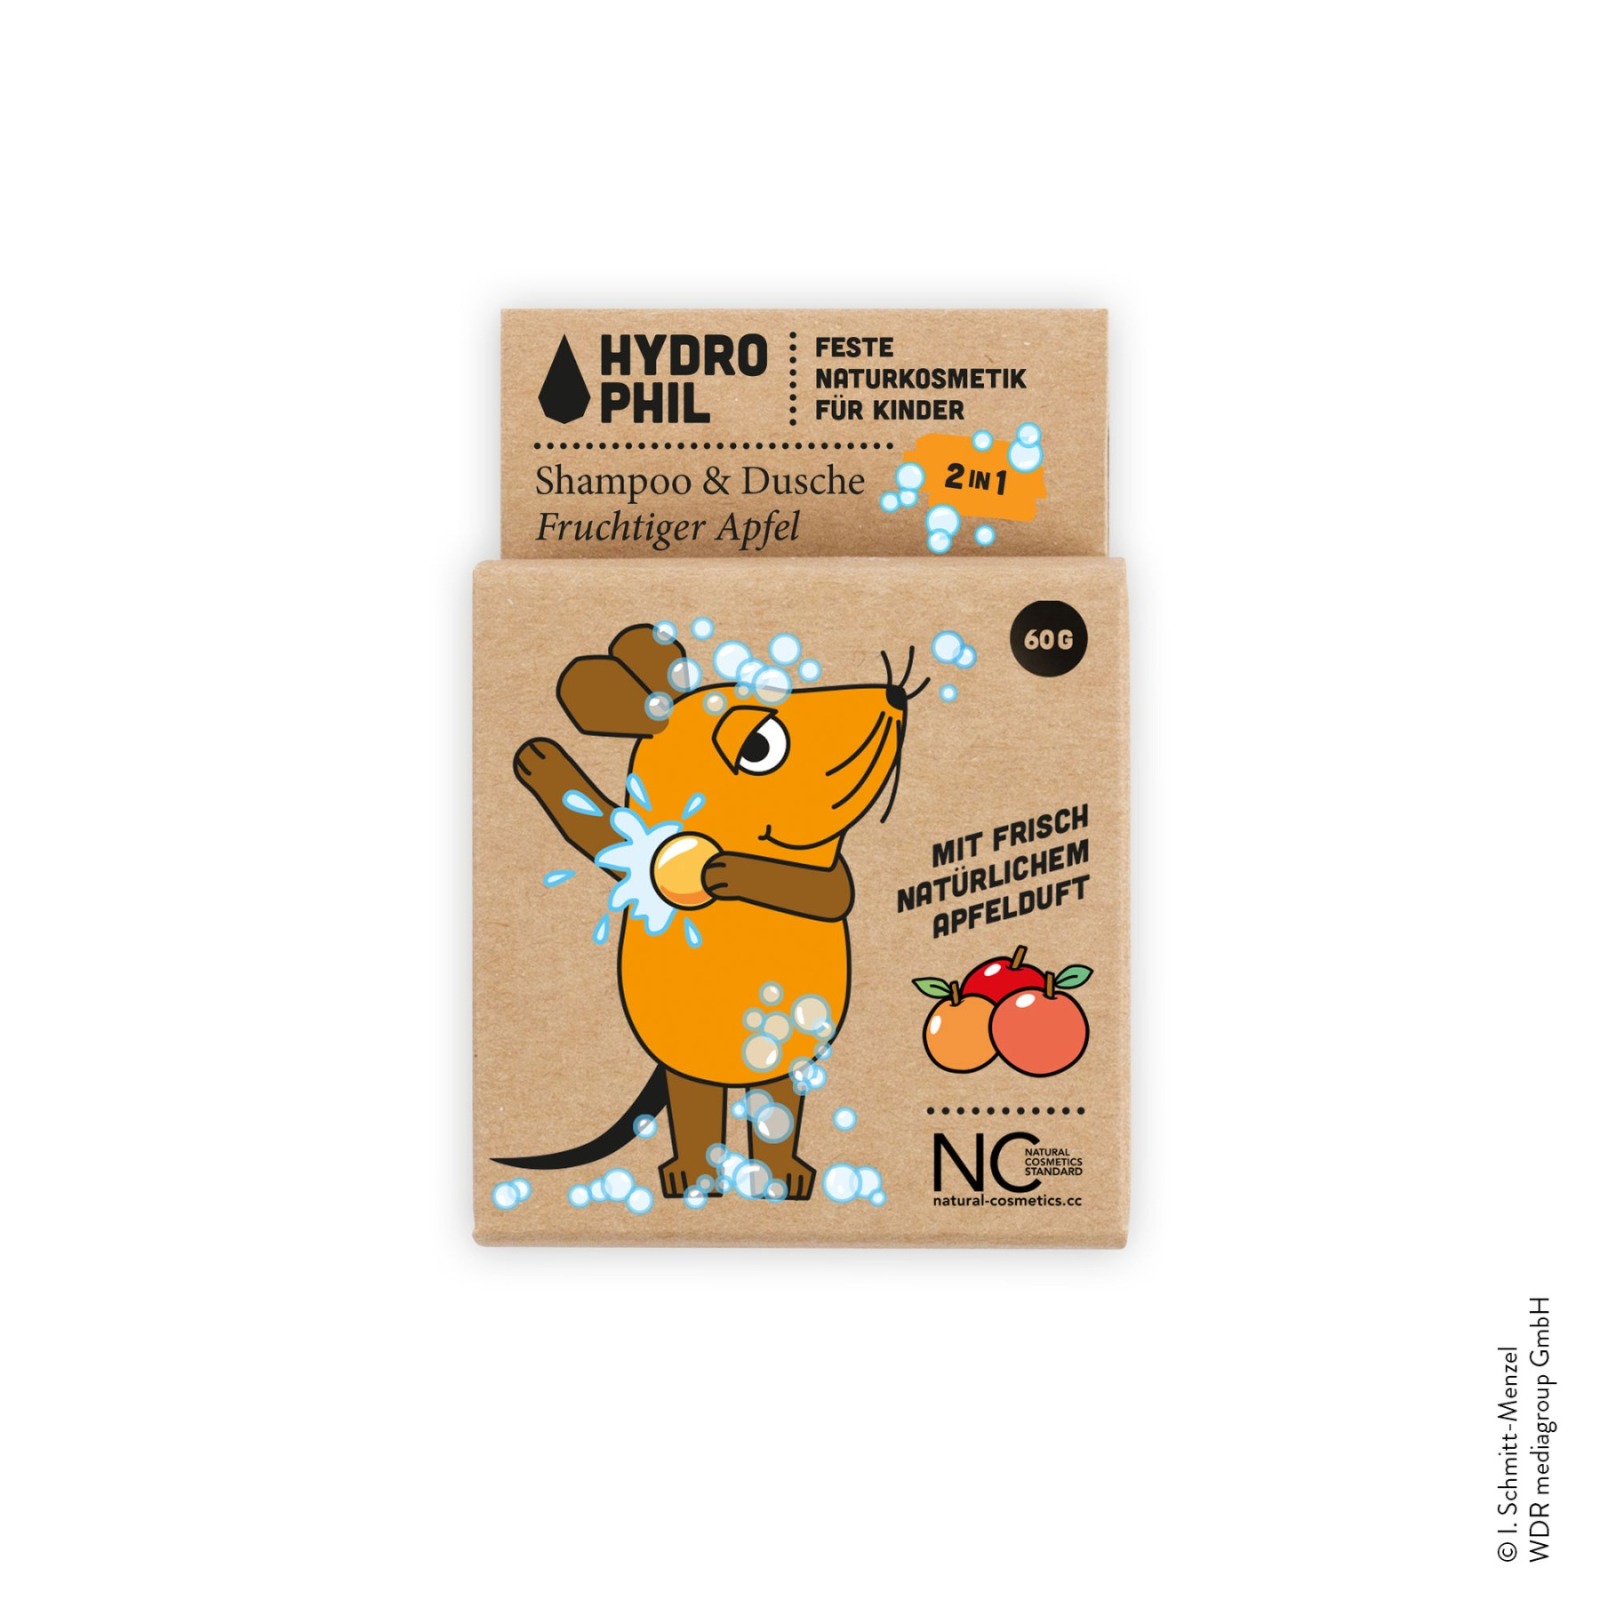 HYDROPHIL - Kinder Shampoo & Dusche Fruchtiger Apfel - Maus 3